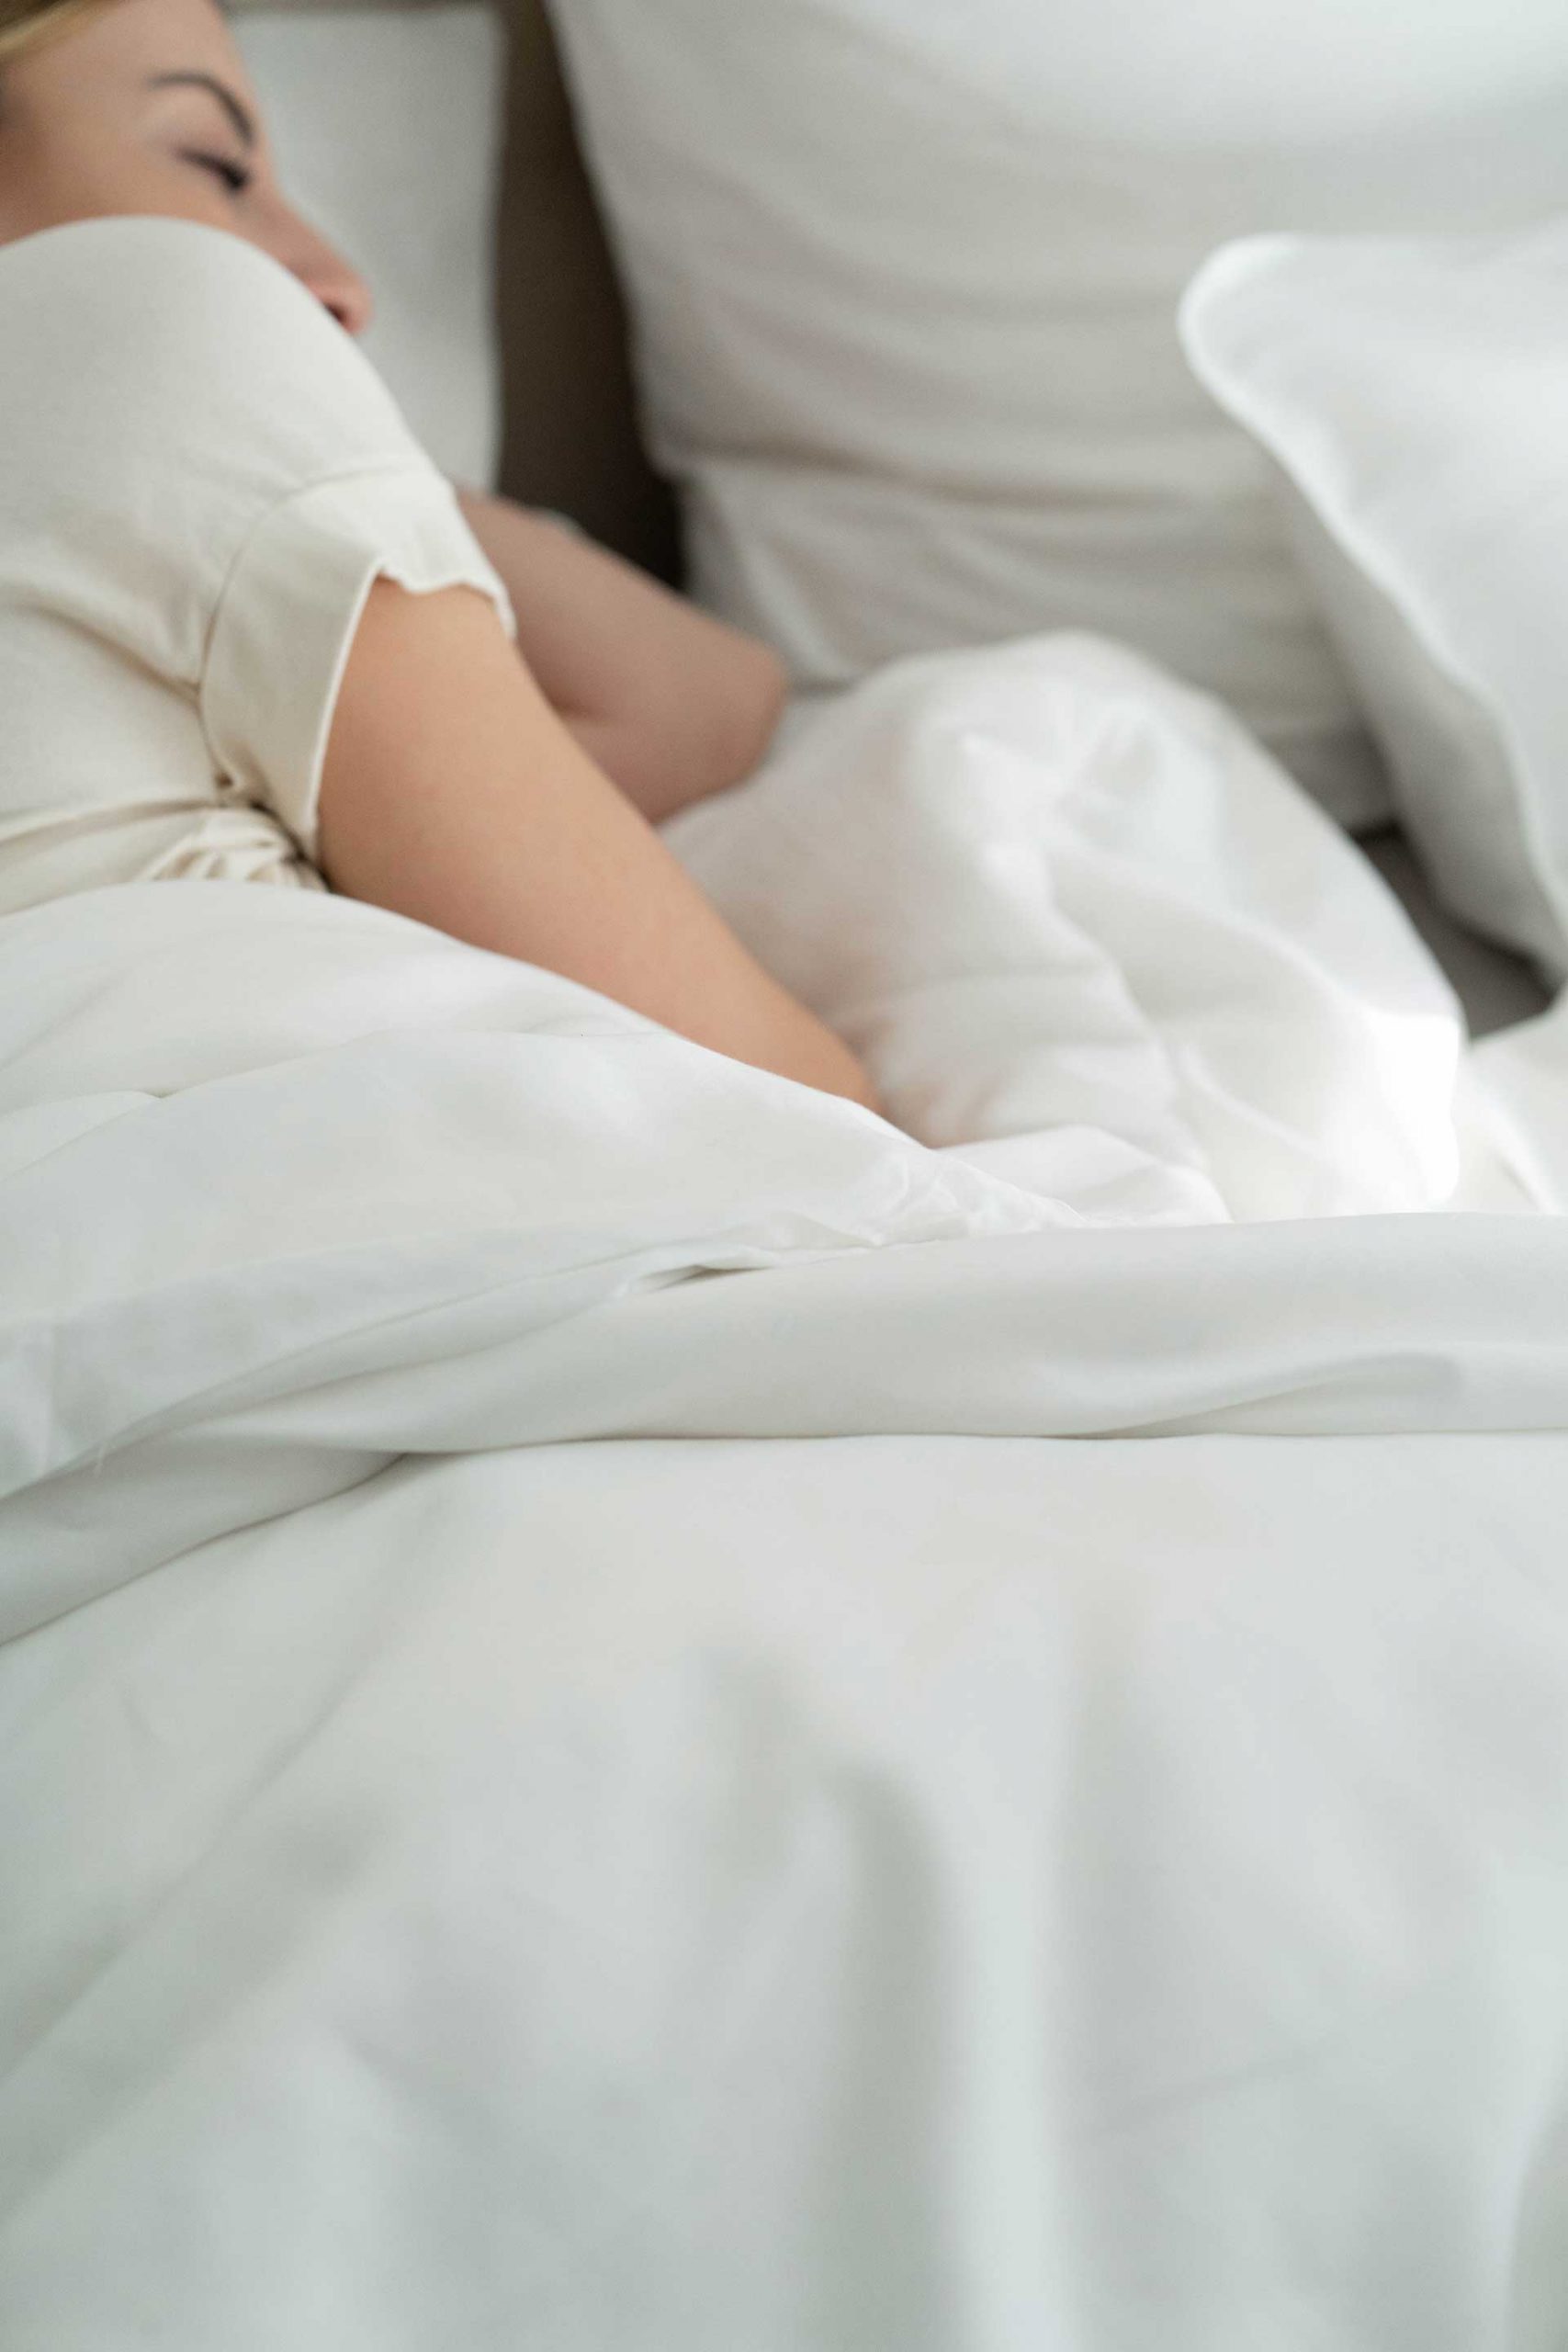 Anzeige. Besser schlafen mithilfe von Gewichtsbettdecken – das macht echt einen Unterschied bei Stress und Anspannung! www.whoismocca.com